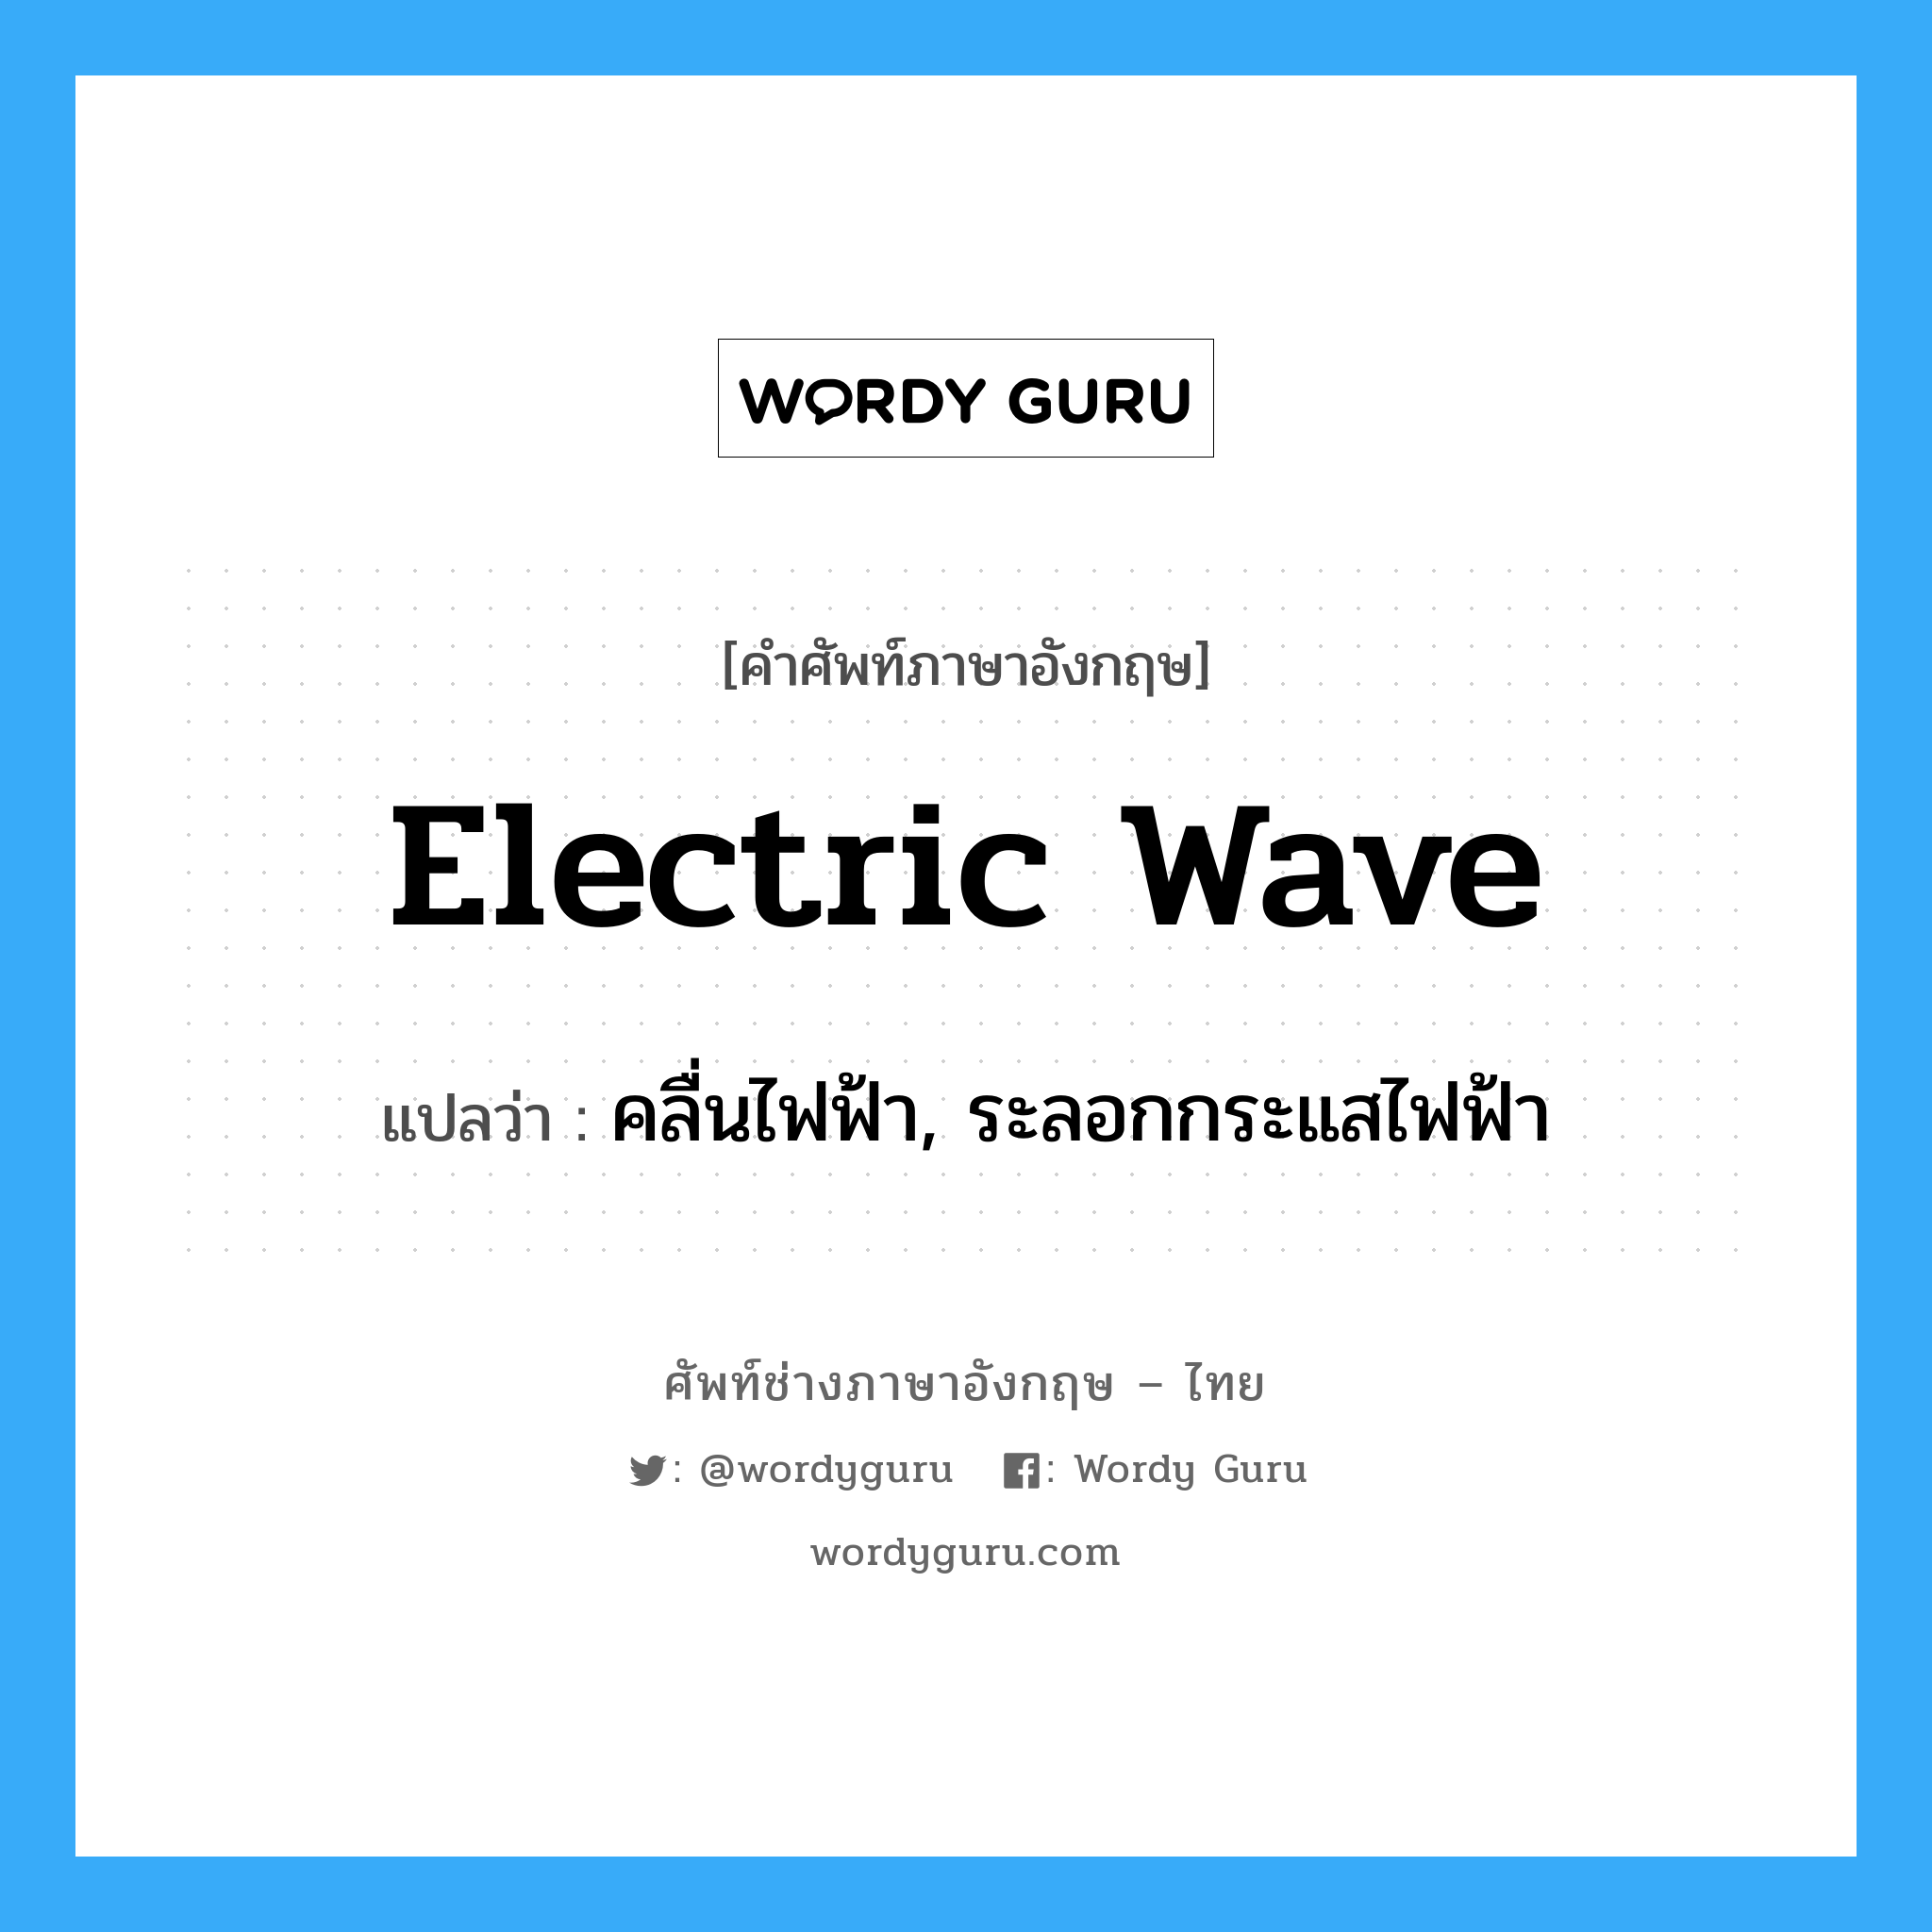 คลื่นไฟฟ้า, ระลอกกระแสไฟฟ้า ภาษาอังกฤษ?, คำศัพท์ช่างภาษาอังกฤษ - ไทย คลื่นไฟฟ้า, ระลอกกระแสไฟฟ้า คำศัพท์ภาษาอังกฤษ คลื่นไฟฟ้า, ระลอกกระแสไฟฟ้า แปลว่า electric wave